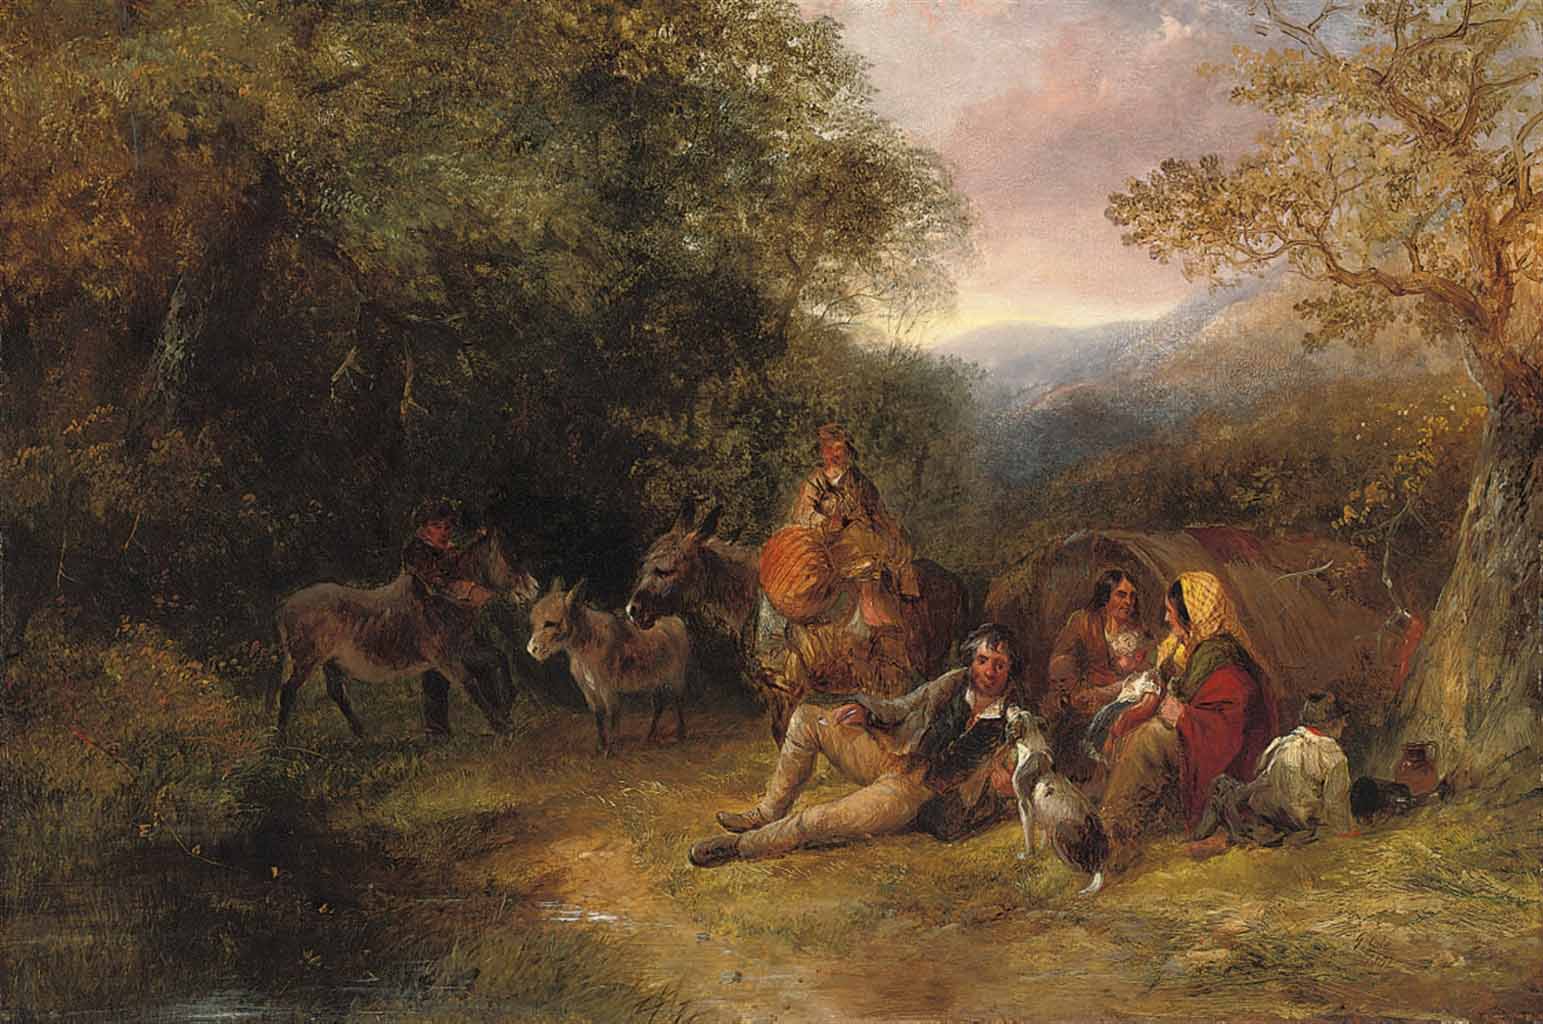 The gypsy encampment